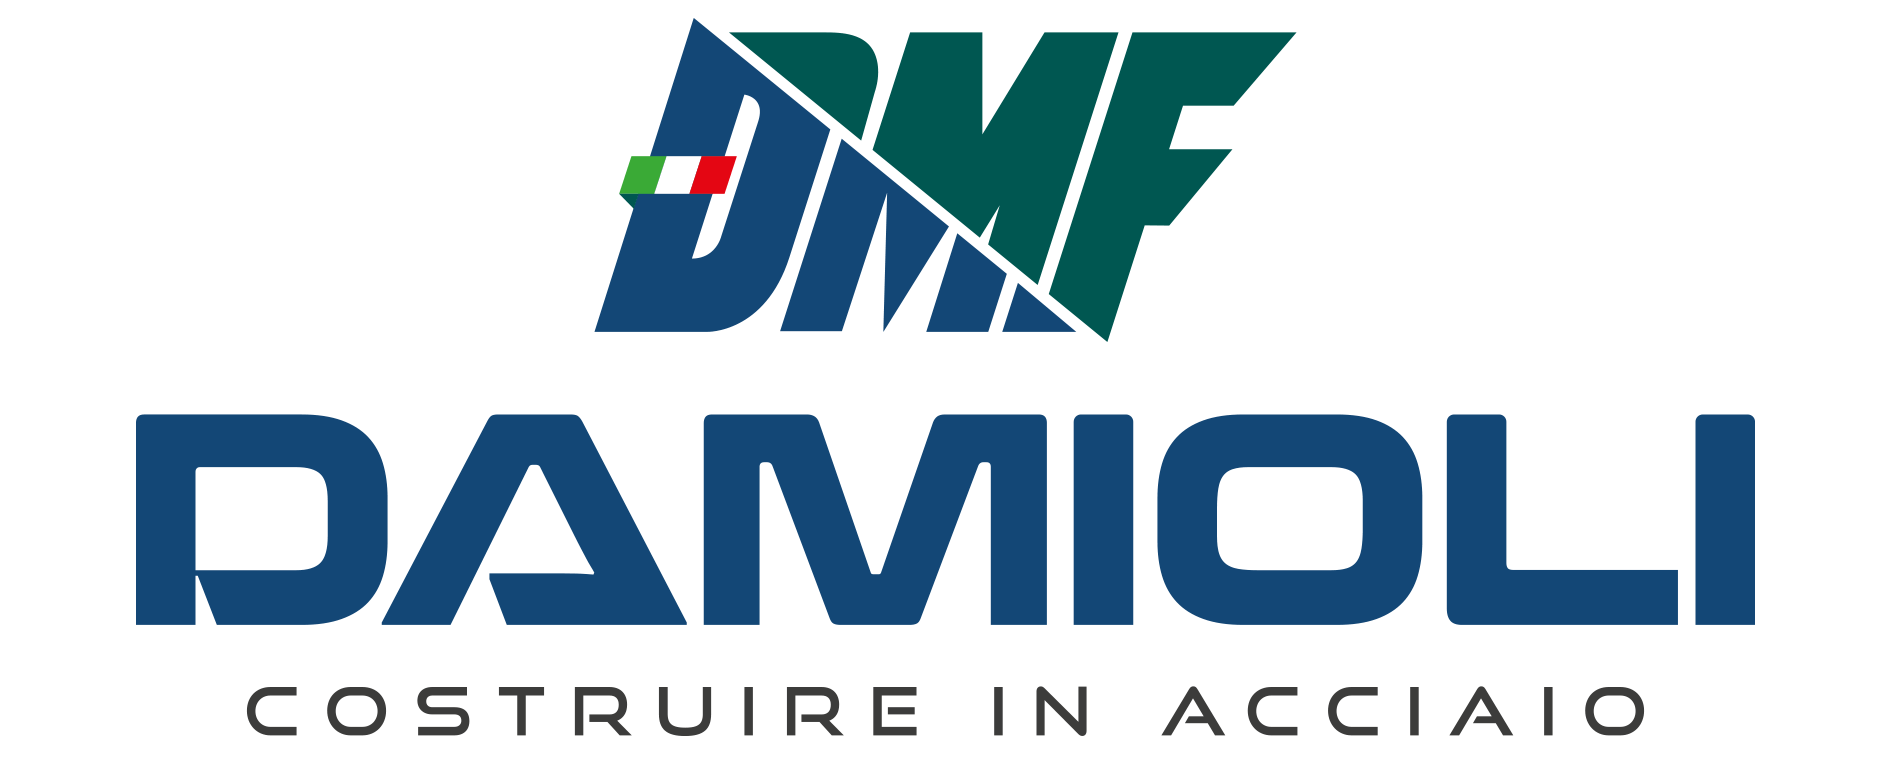 D.M.F. - DAMIOLI - logo